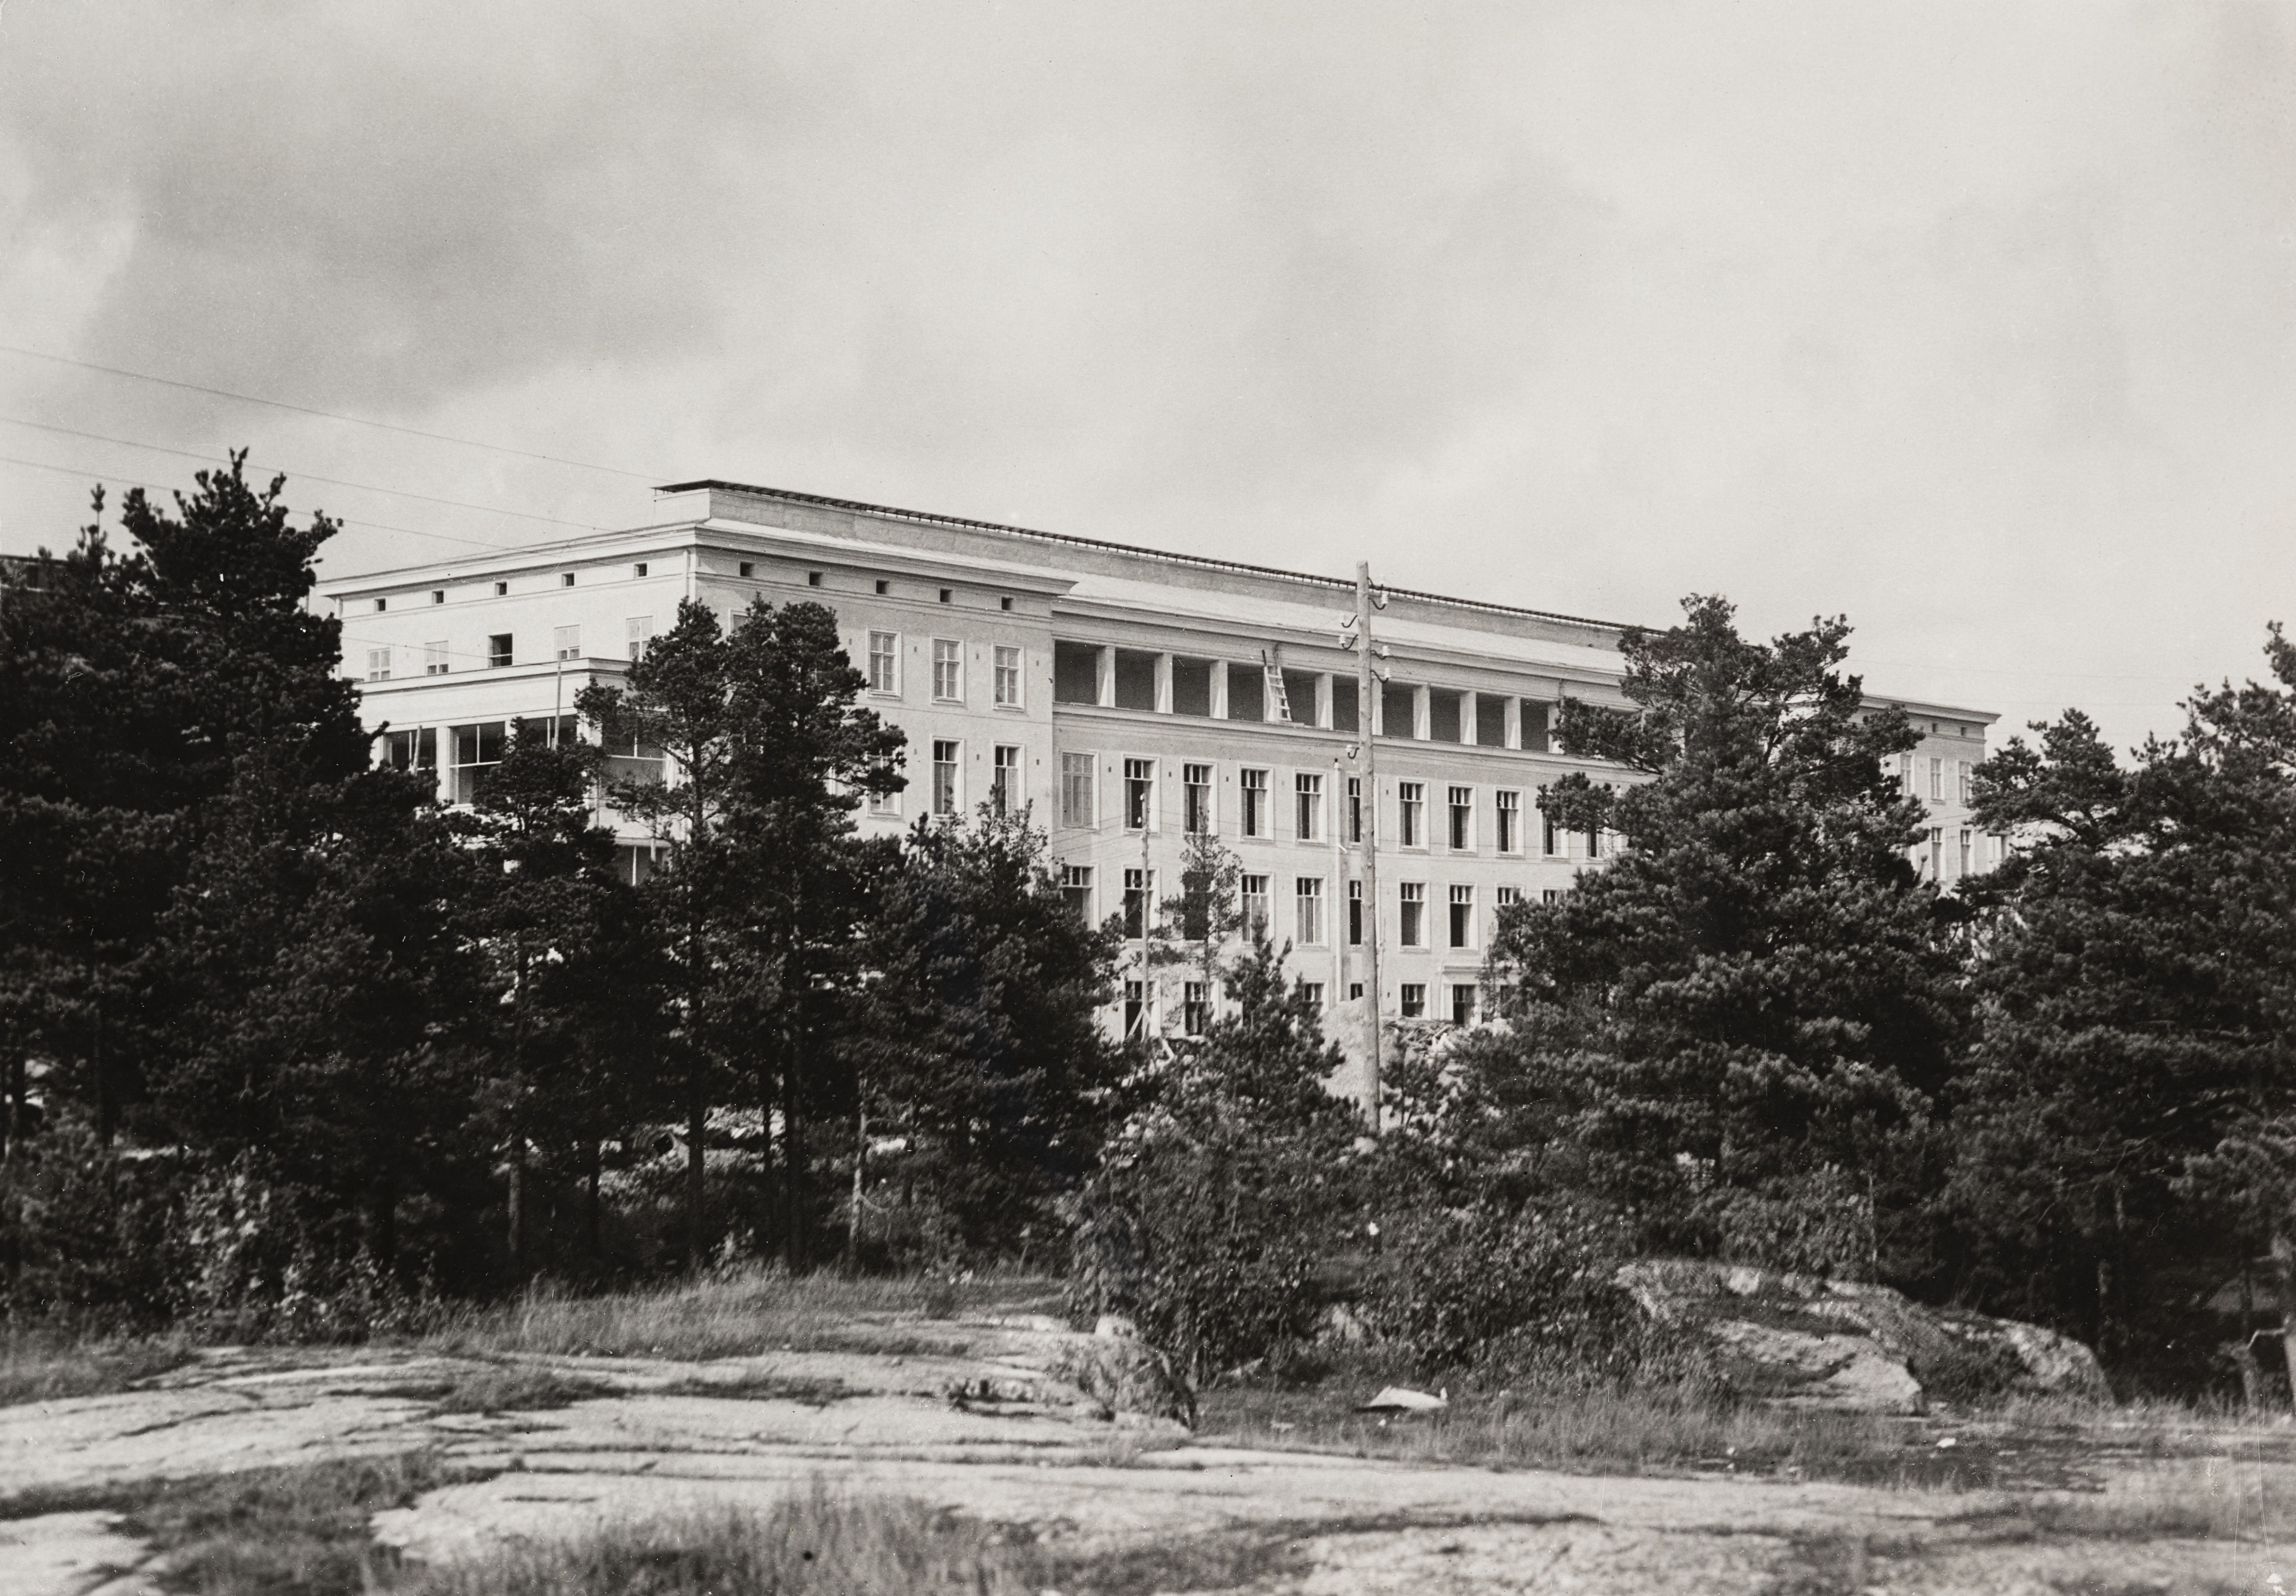 Helsingin tuberkuloosisairaalan (nykyinen Laakson sairaala) itäinen potilaspavijonki kuvattuna sairaalan puistoalueeseen kuuluneen metsikön takaa. Uusklassista tyyliä edustavan sairaalan suunnitteli arkkitehti Eino Forsman 1926 ja se otettiin käyttöön 1930.